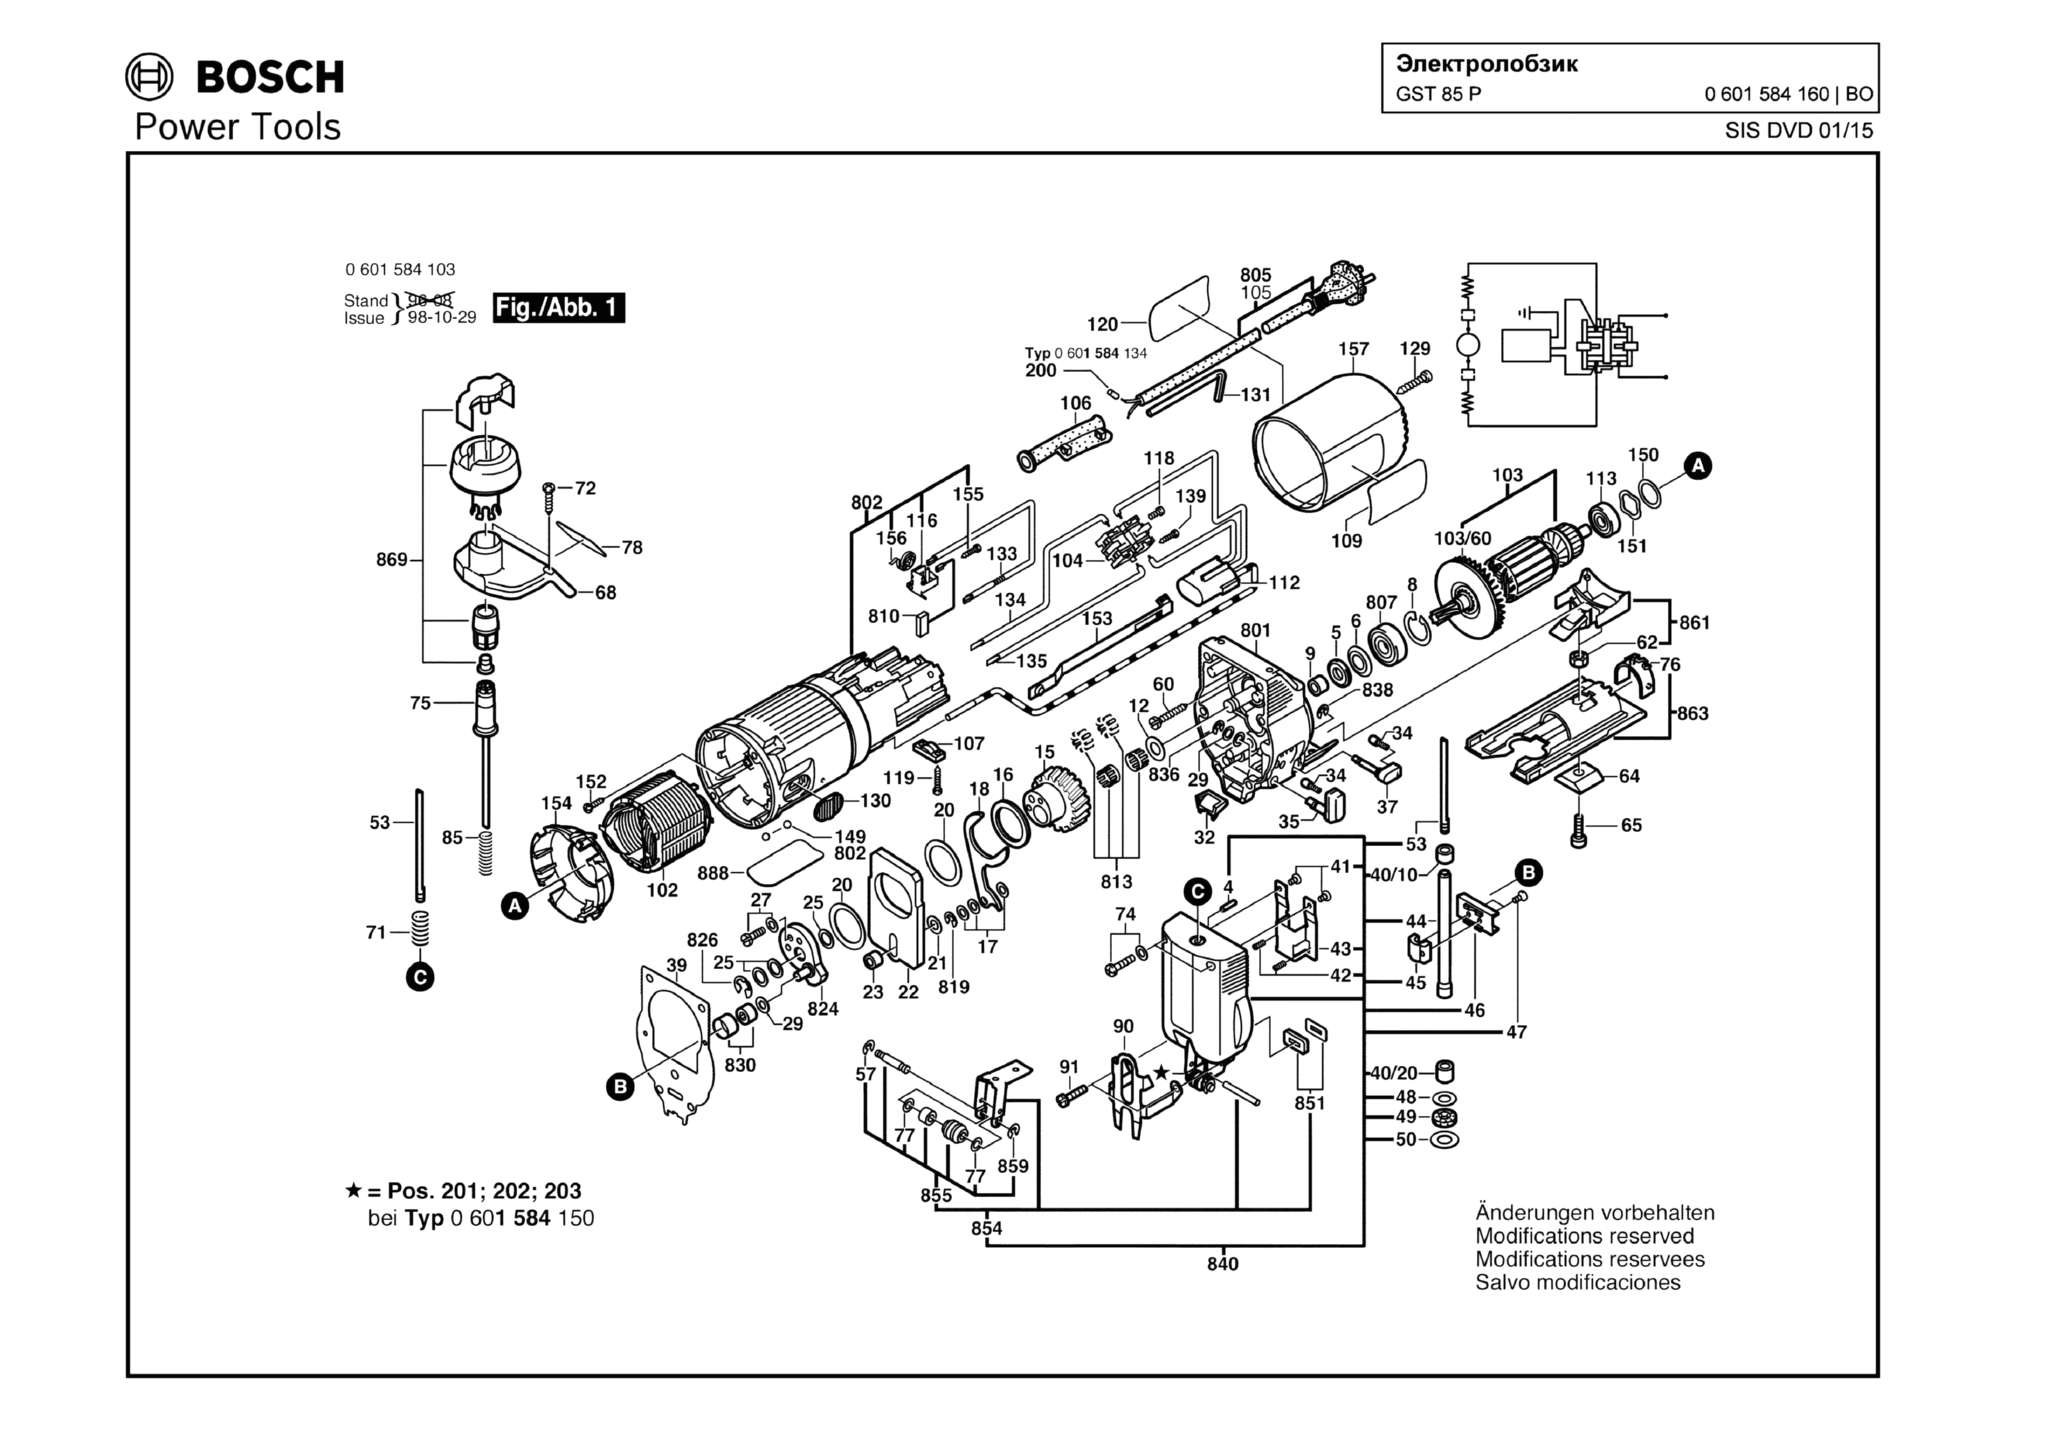 Запчасти, схема и деталировка Bosch GST 85 P (ТИП 0601584160)